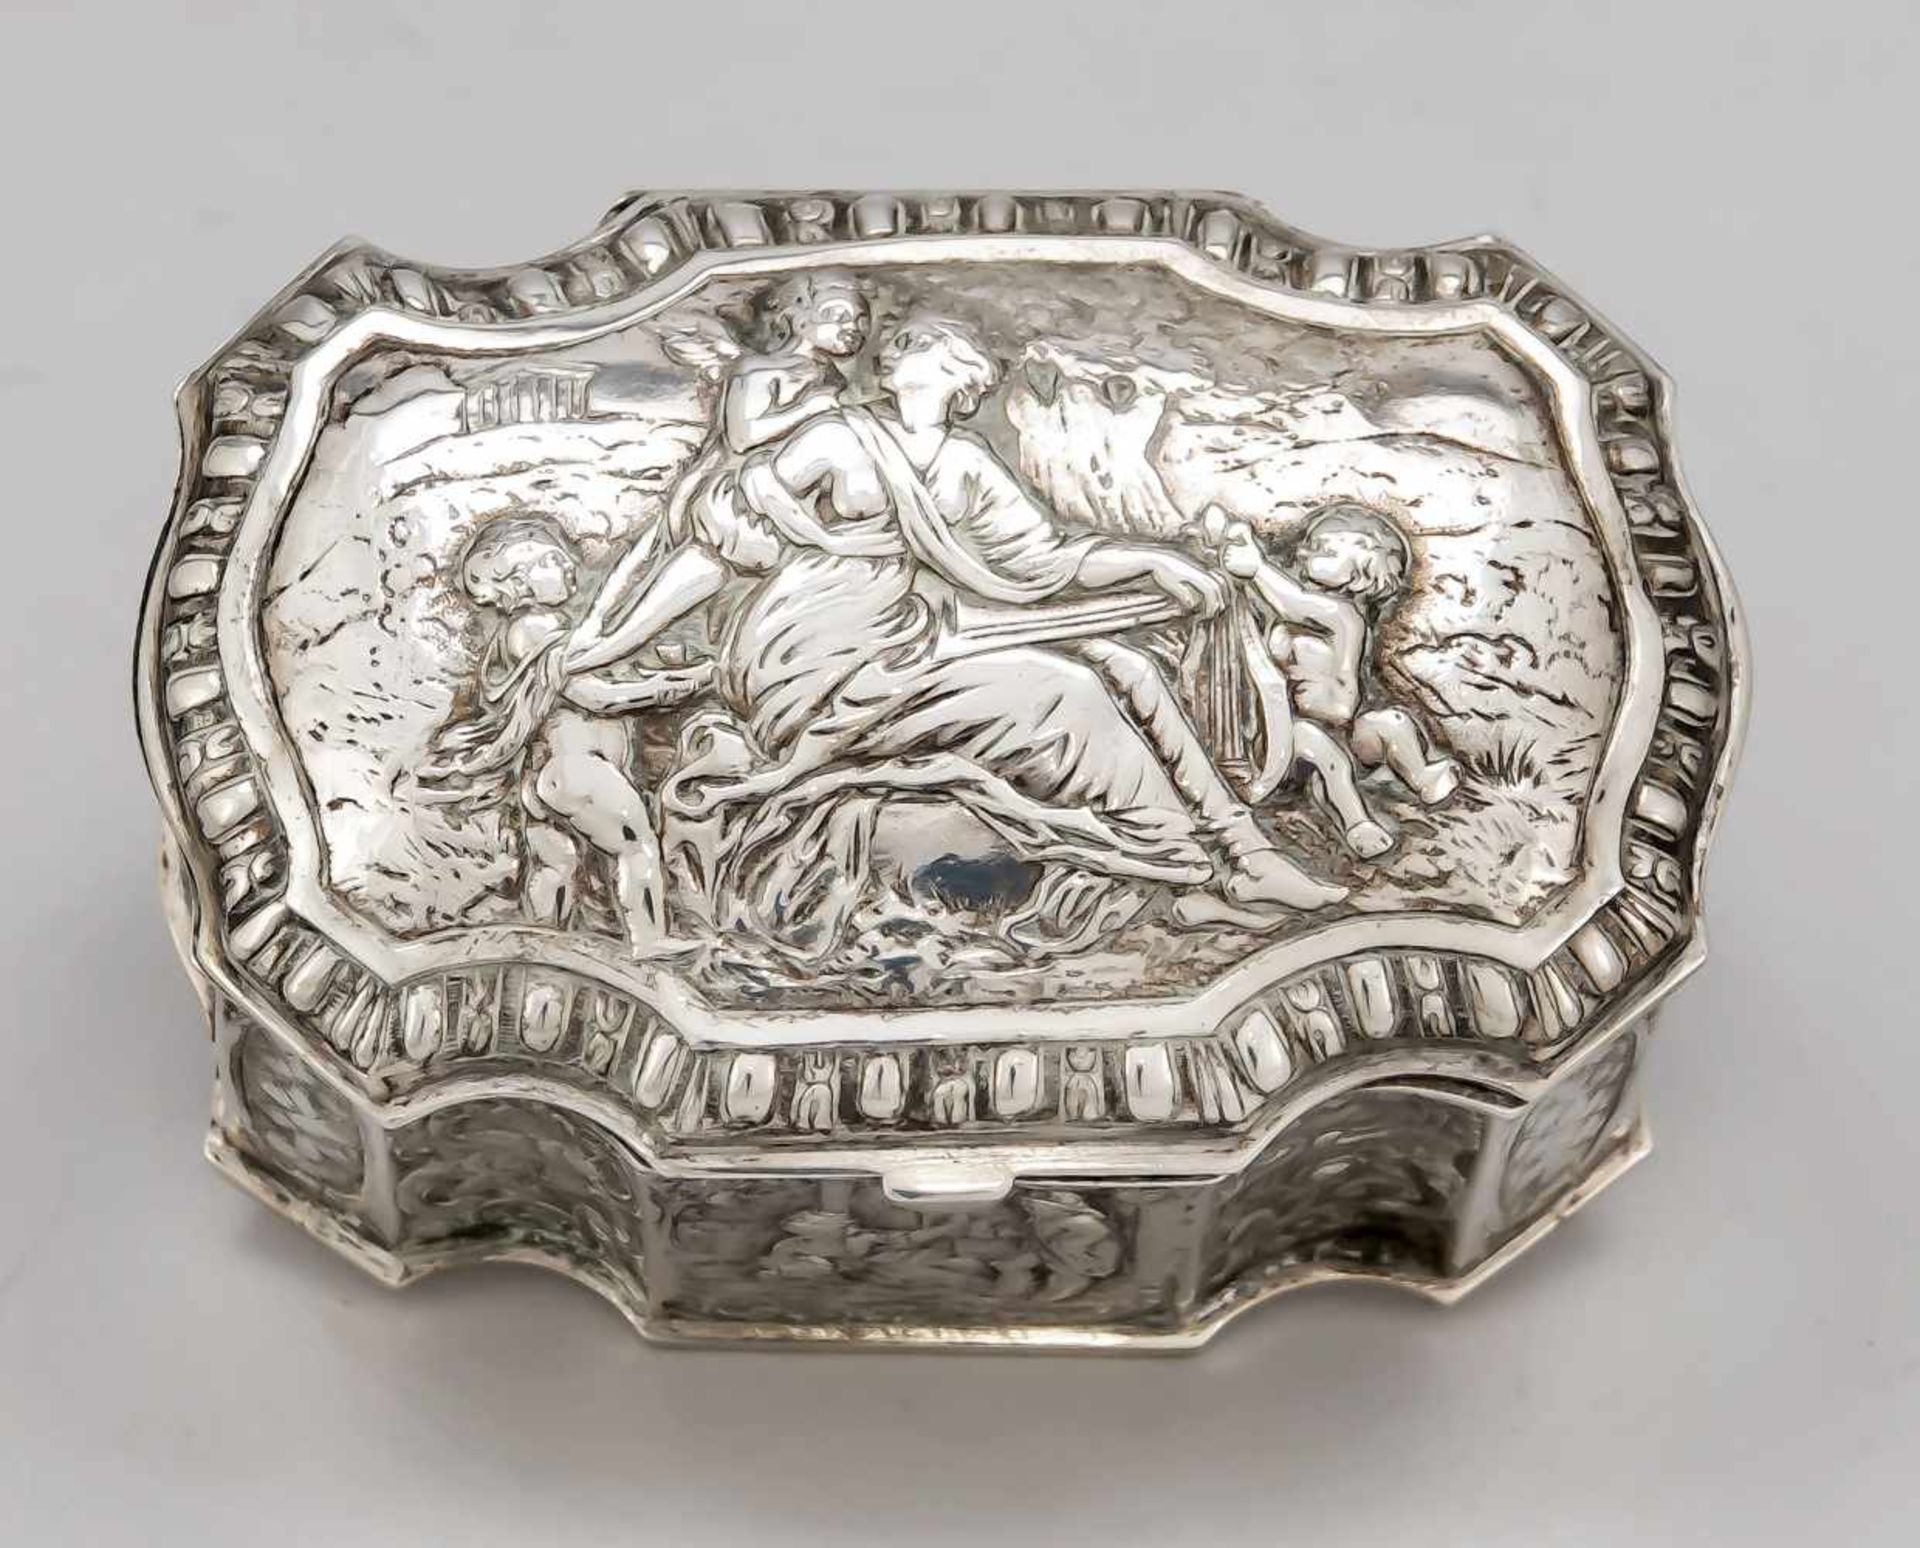 Passig geschweifte Deckeldose, Deutsch, um 1900, Silber 800/000, gerader Korpus, gewölbter